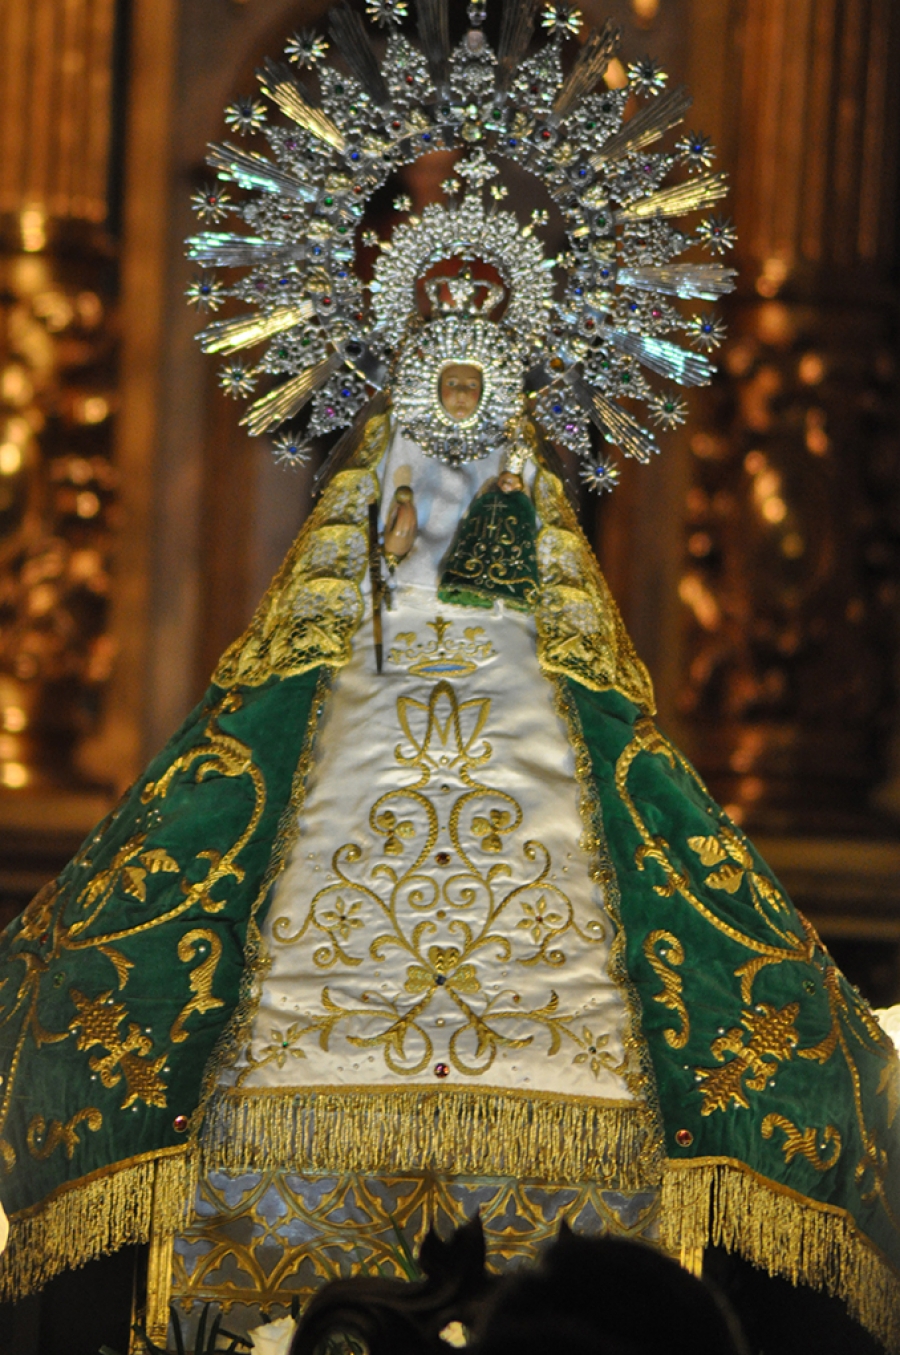 Fuencarral se vuelca en las fiestas en honor a Nuestra Señora de Valverde